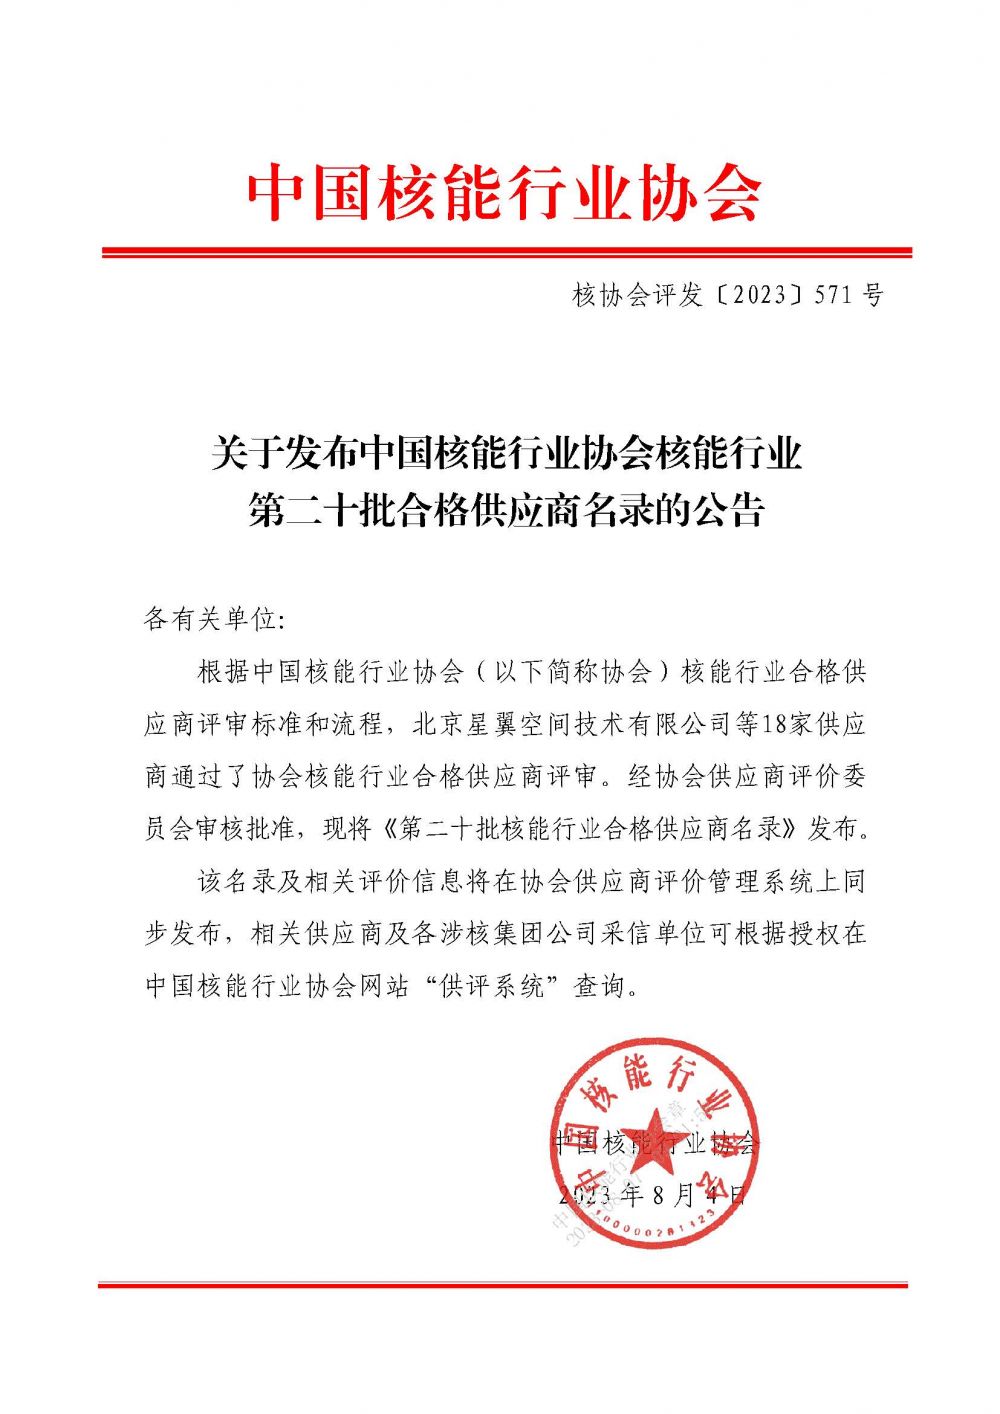 关于发布中国核能行业协会核能行业第二十批合格供应商名录的公告_页面_1.jpg